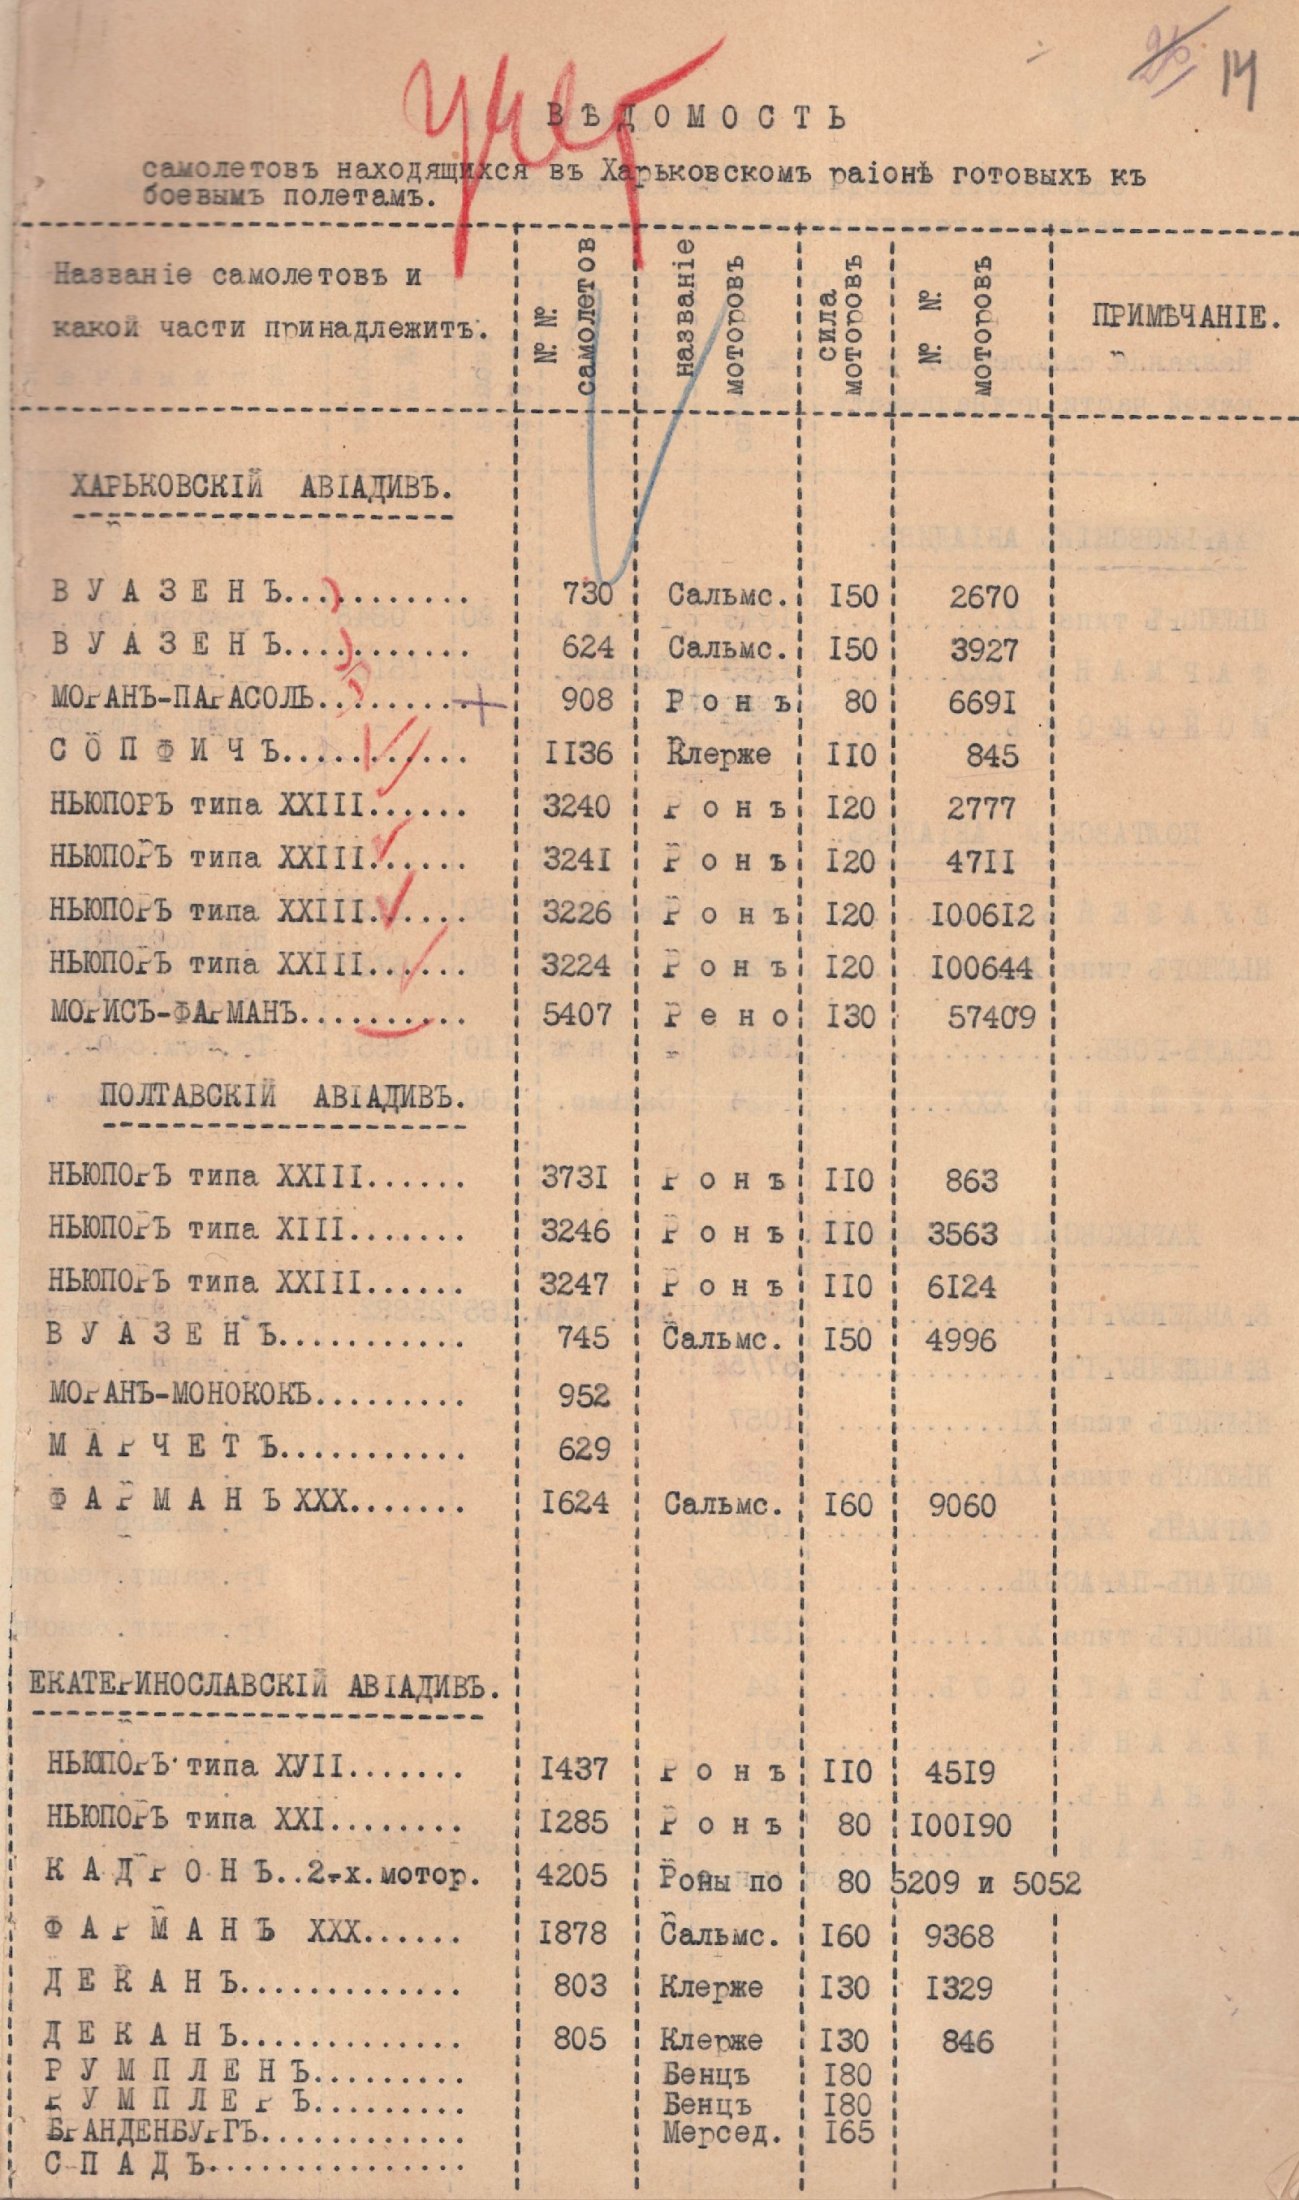 Список літаків Харківського району готових до бойових польотів. 1918 р.